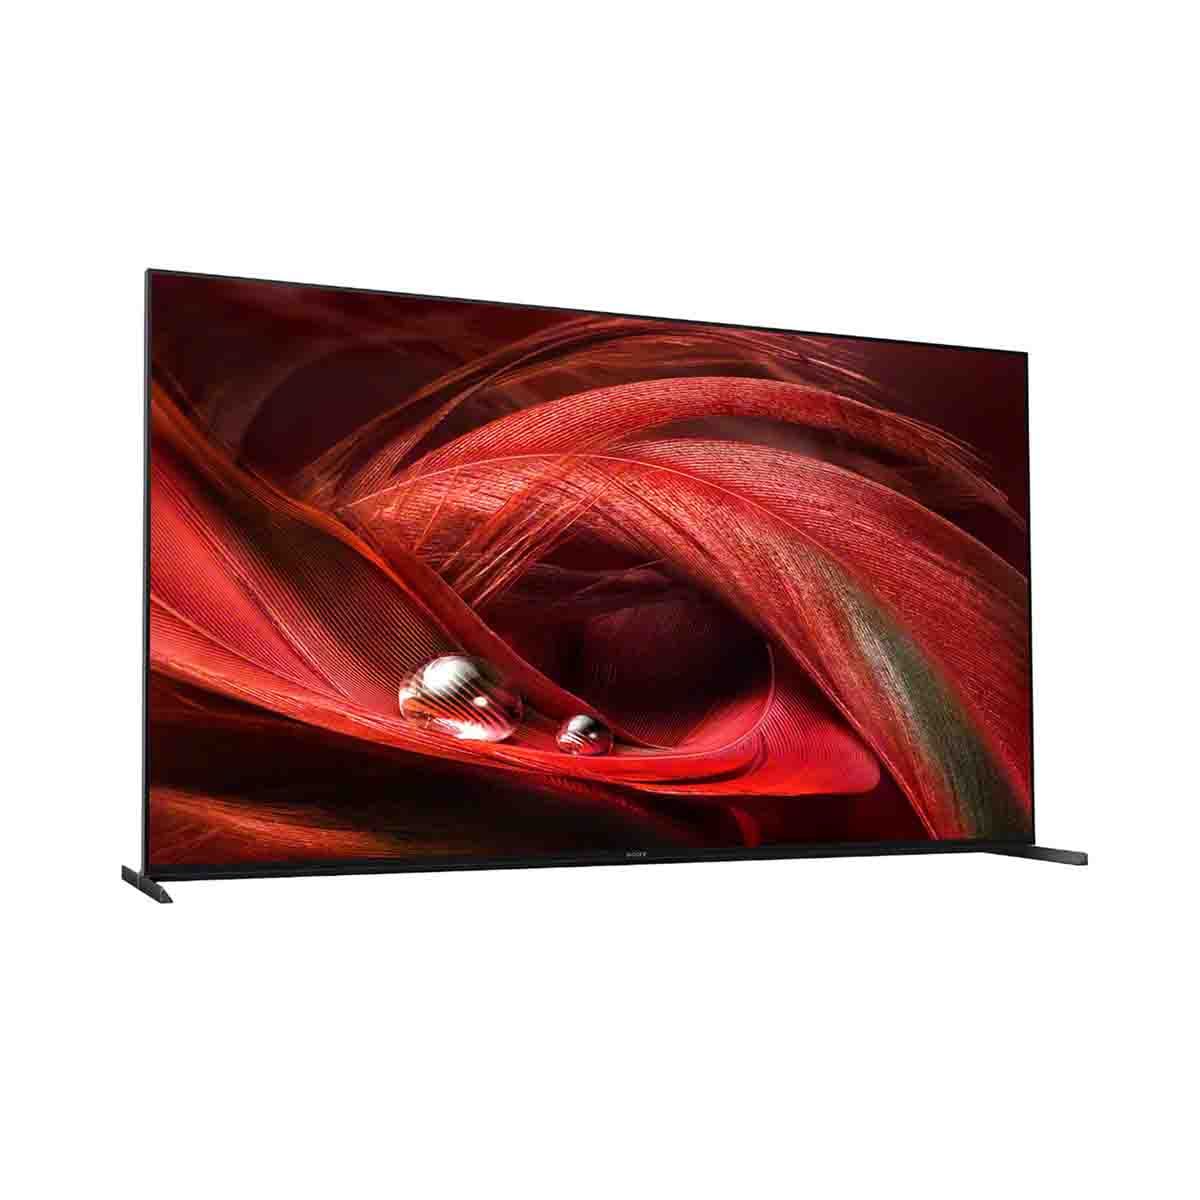 SONY LED Google TV 4K 120 Hz รุ่น XR-65X95J สมาร์ททีวี ขนาด 65 นิ้ว  X95J Series